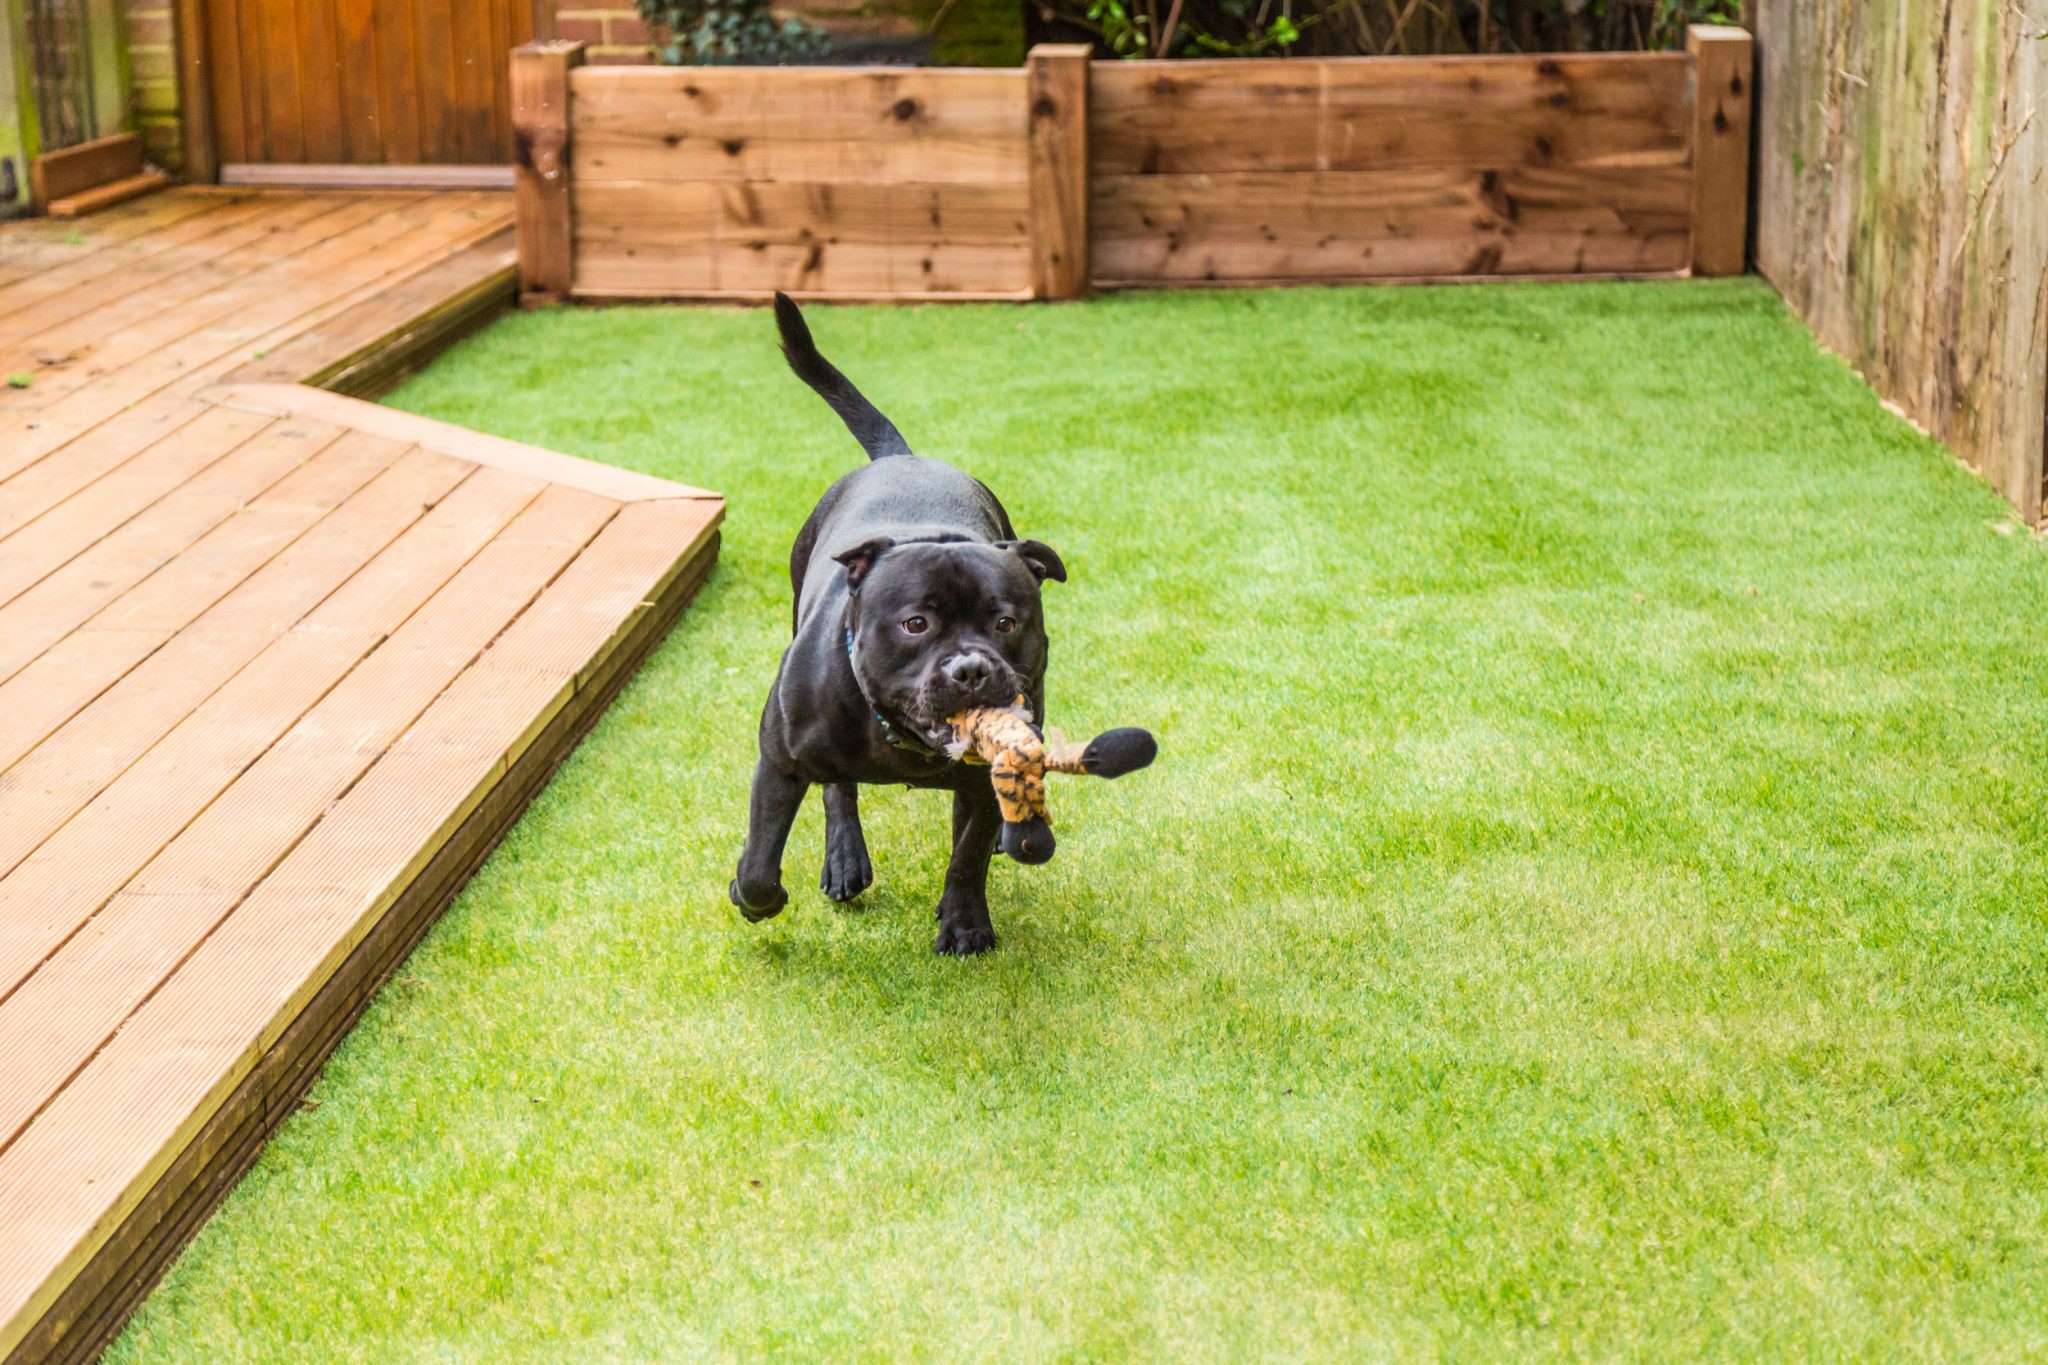 How To Make A Dog Run In Backyard